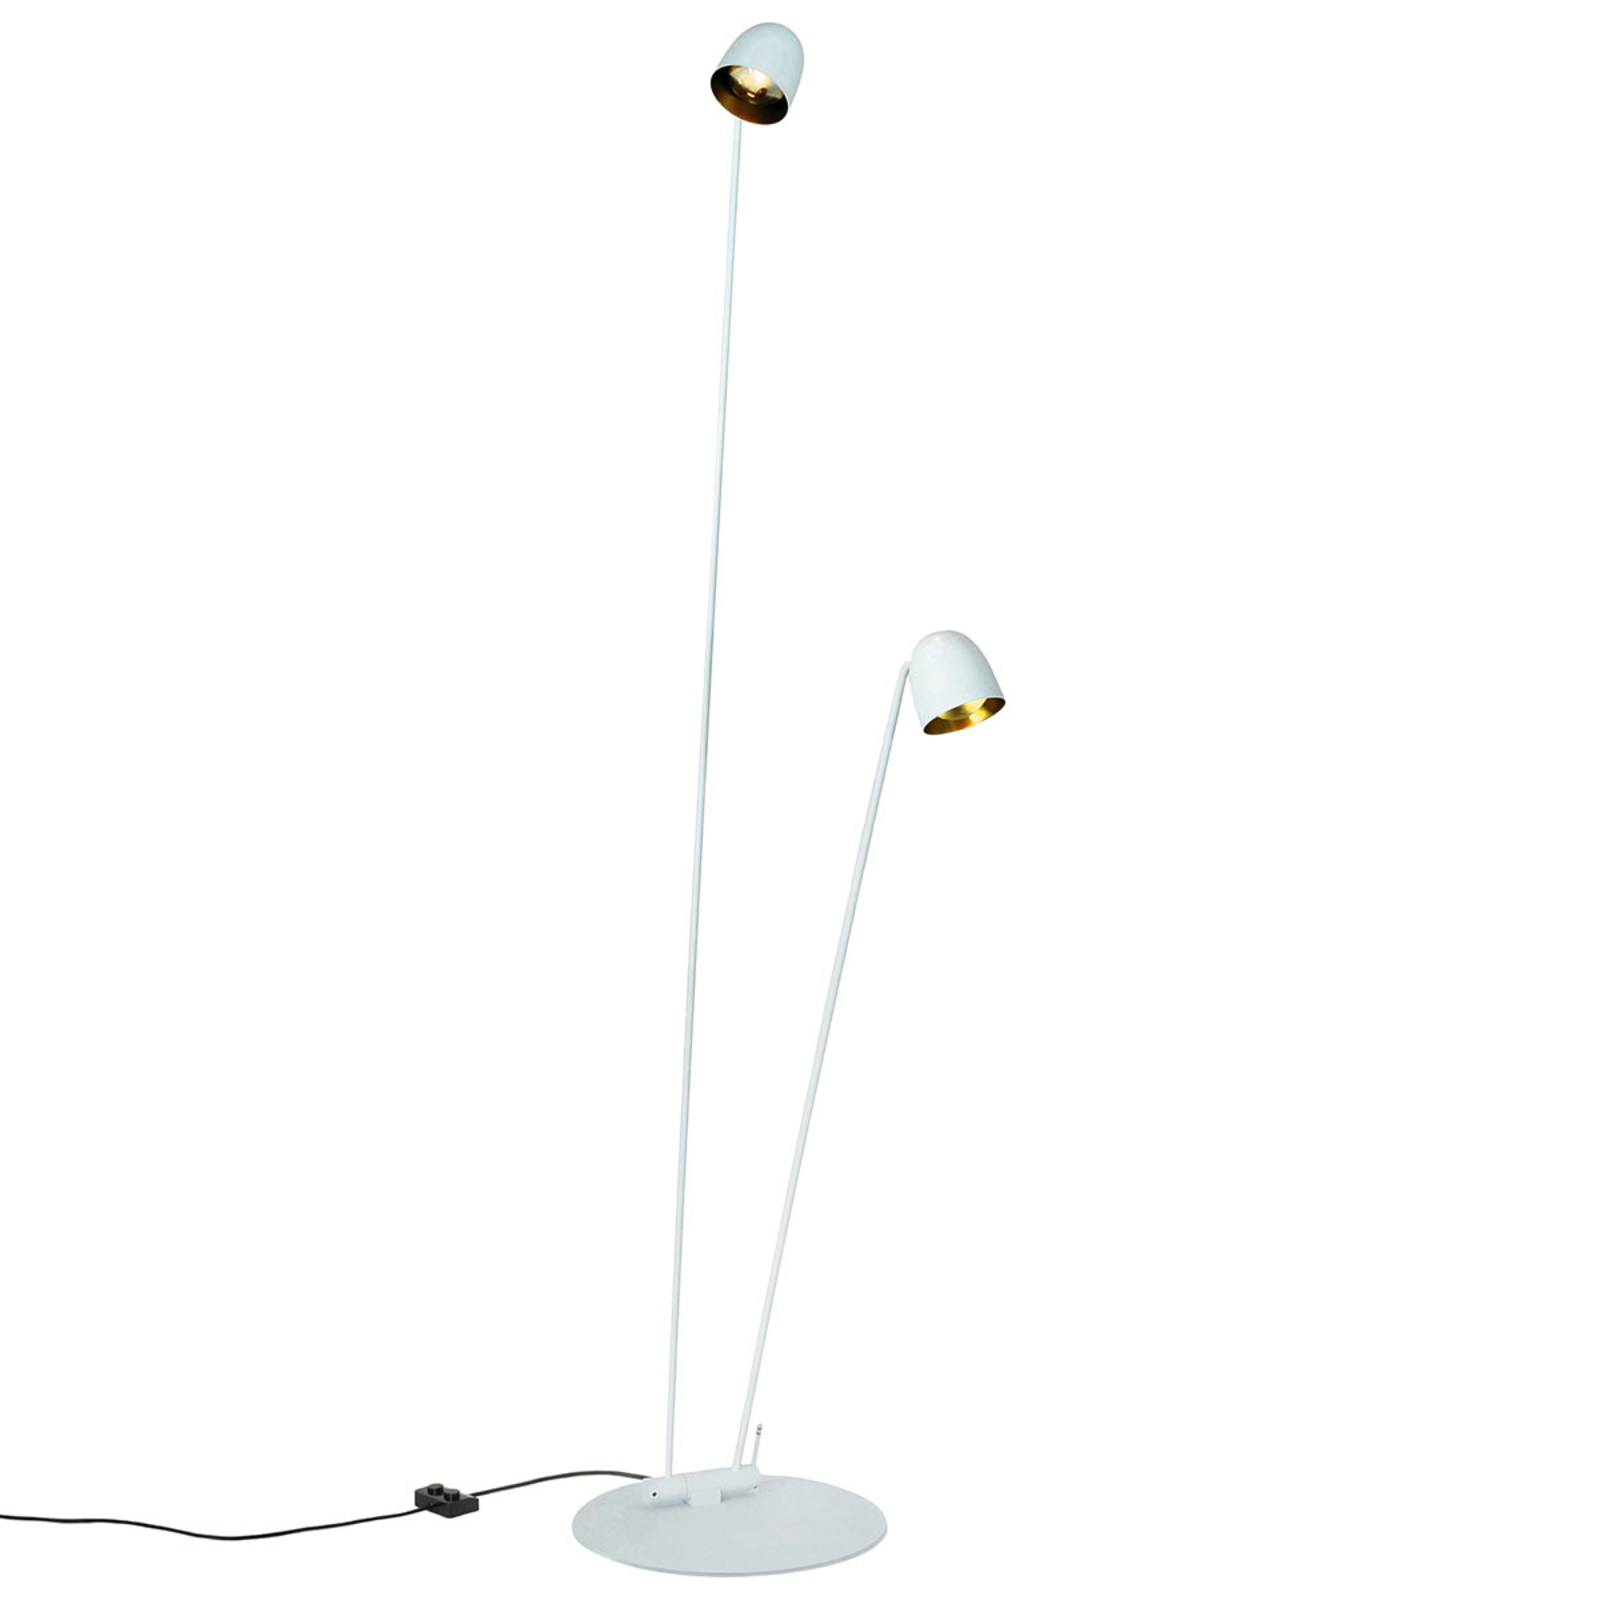 Lanksčiai reguliuojamas LED grindų šviestuvas "Speers F" baltas